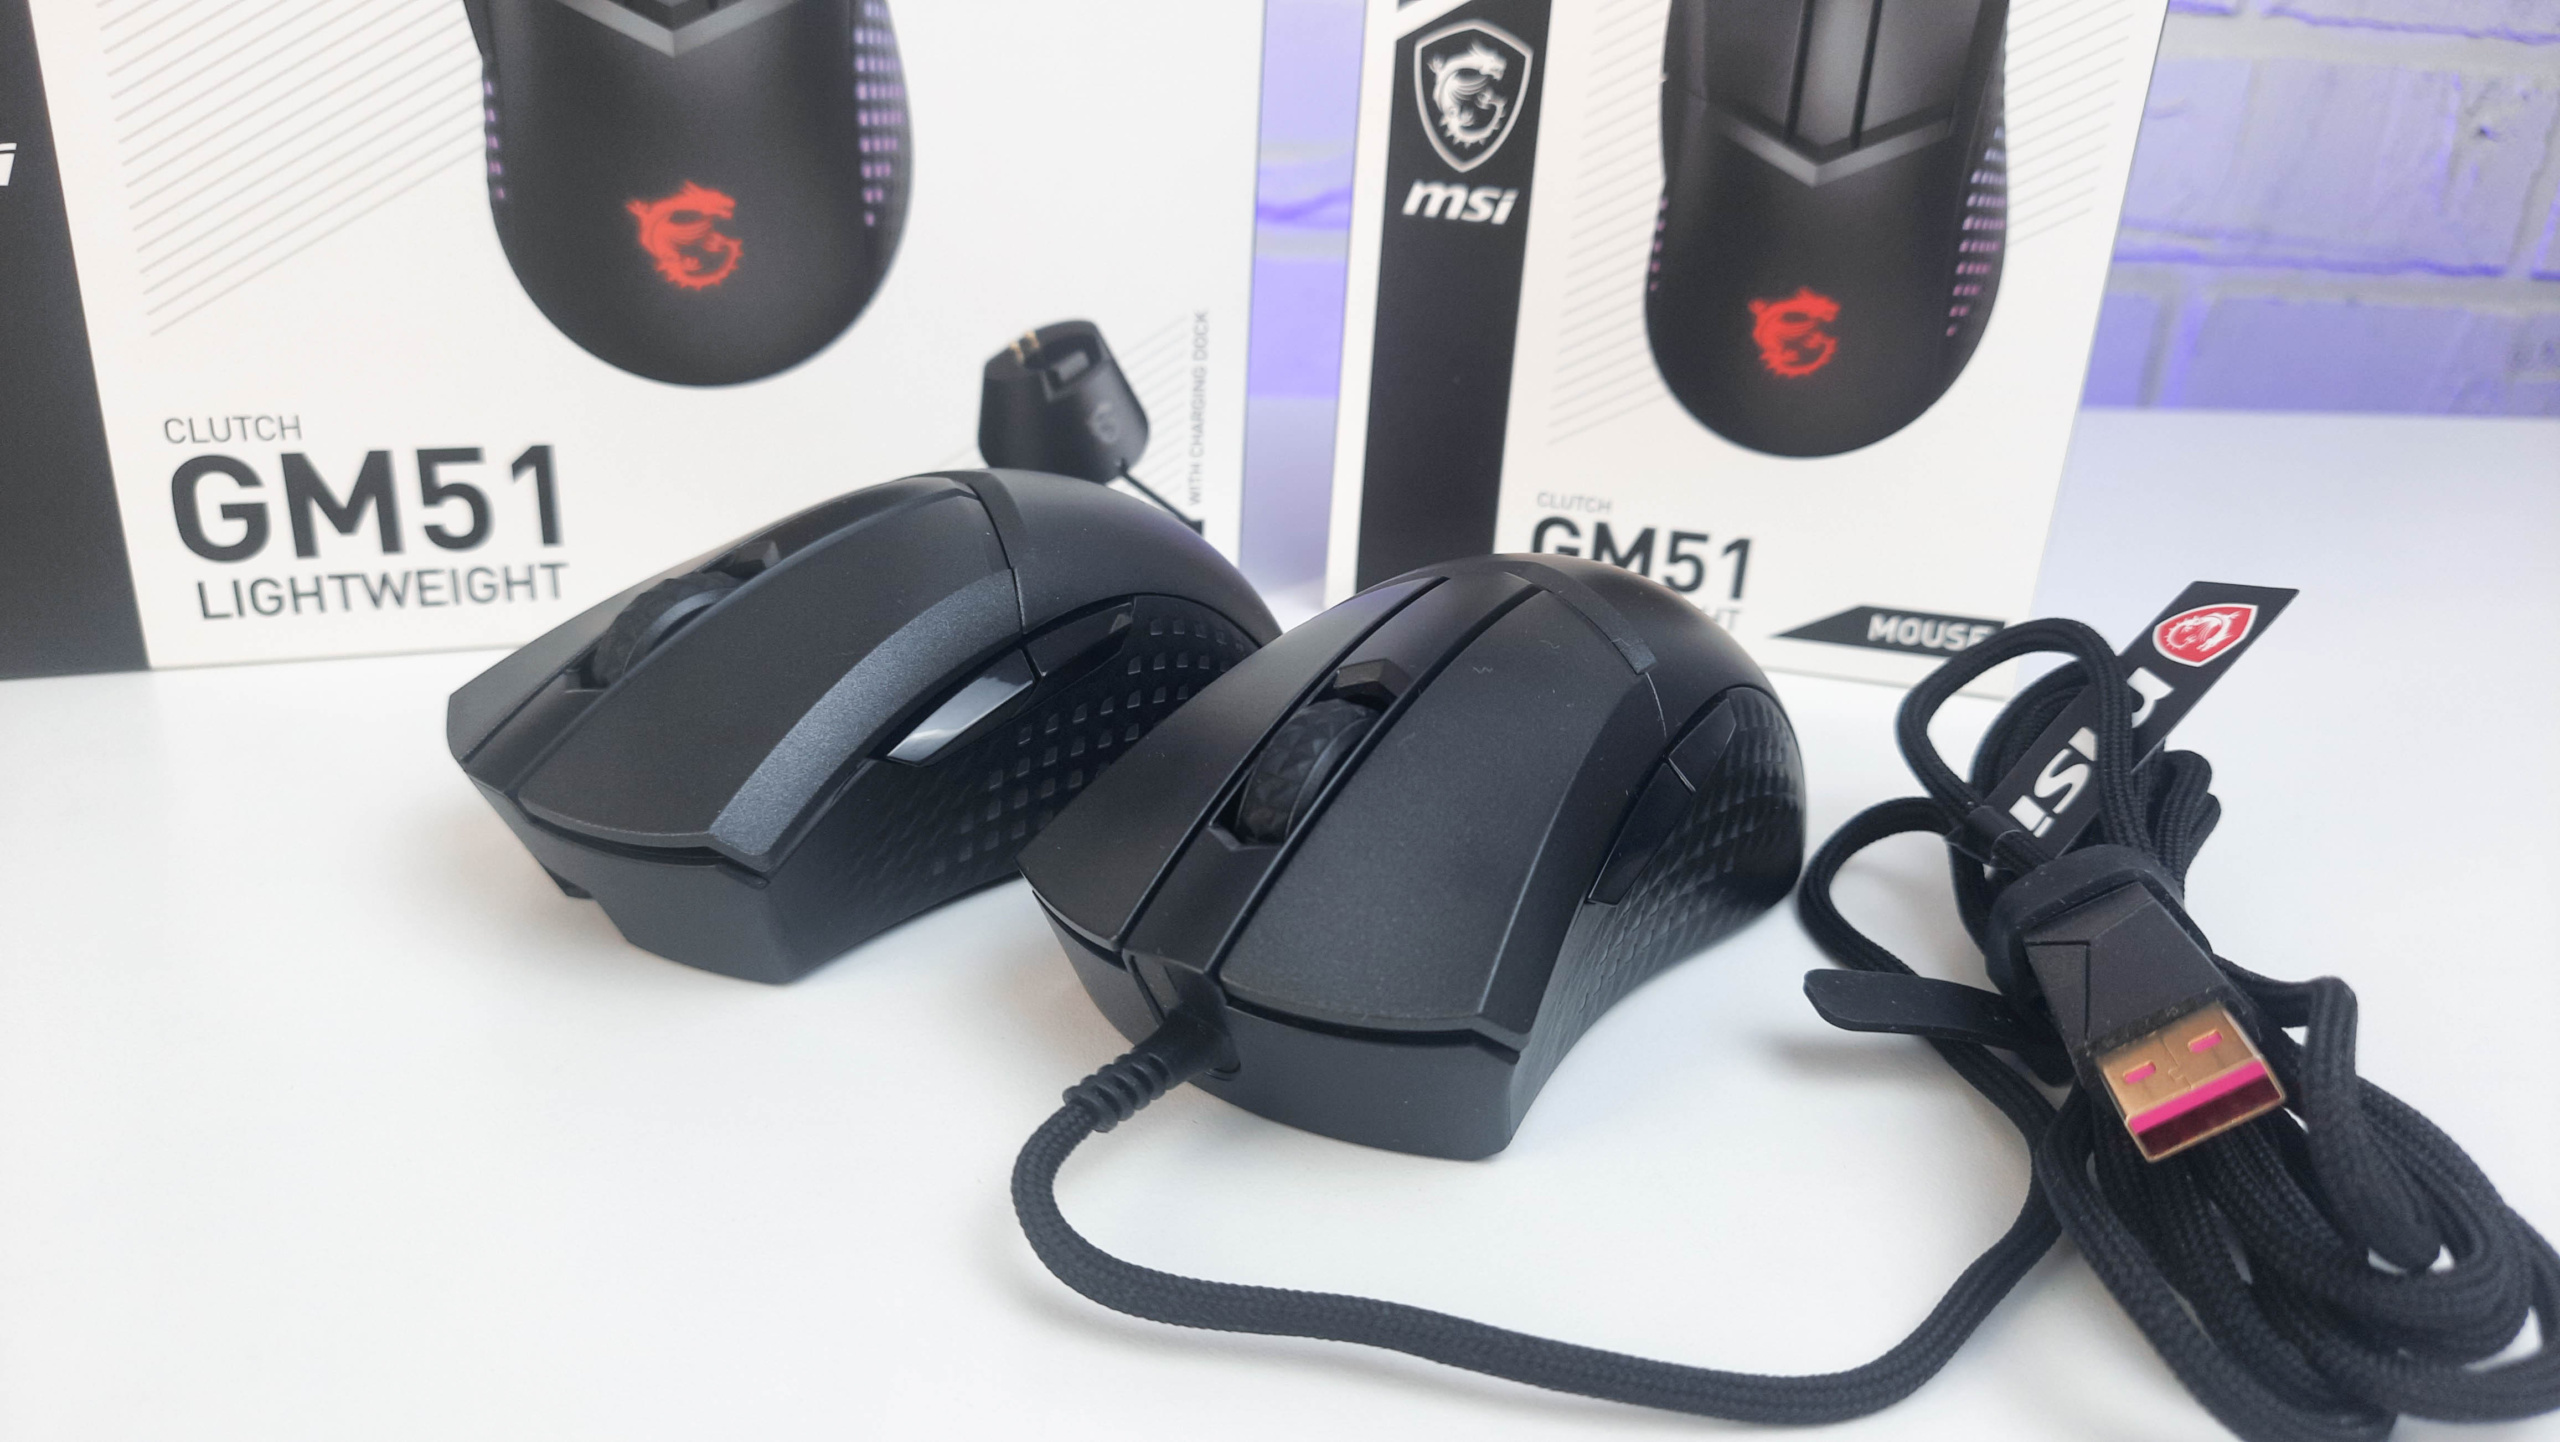 Обзор MSI Clutch GM51 и GM51 Wireless: игровые мышки с превосходной эргономикой, RGB-подсветкой и максимальным разрешением 26 000 DPI